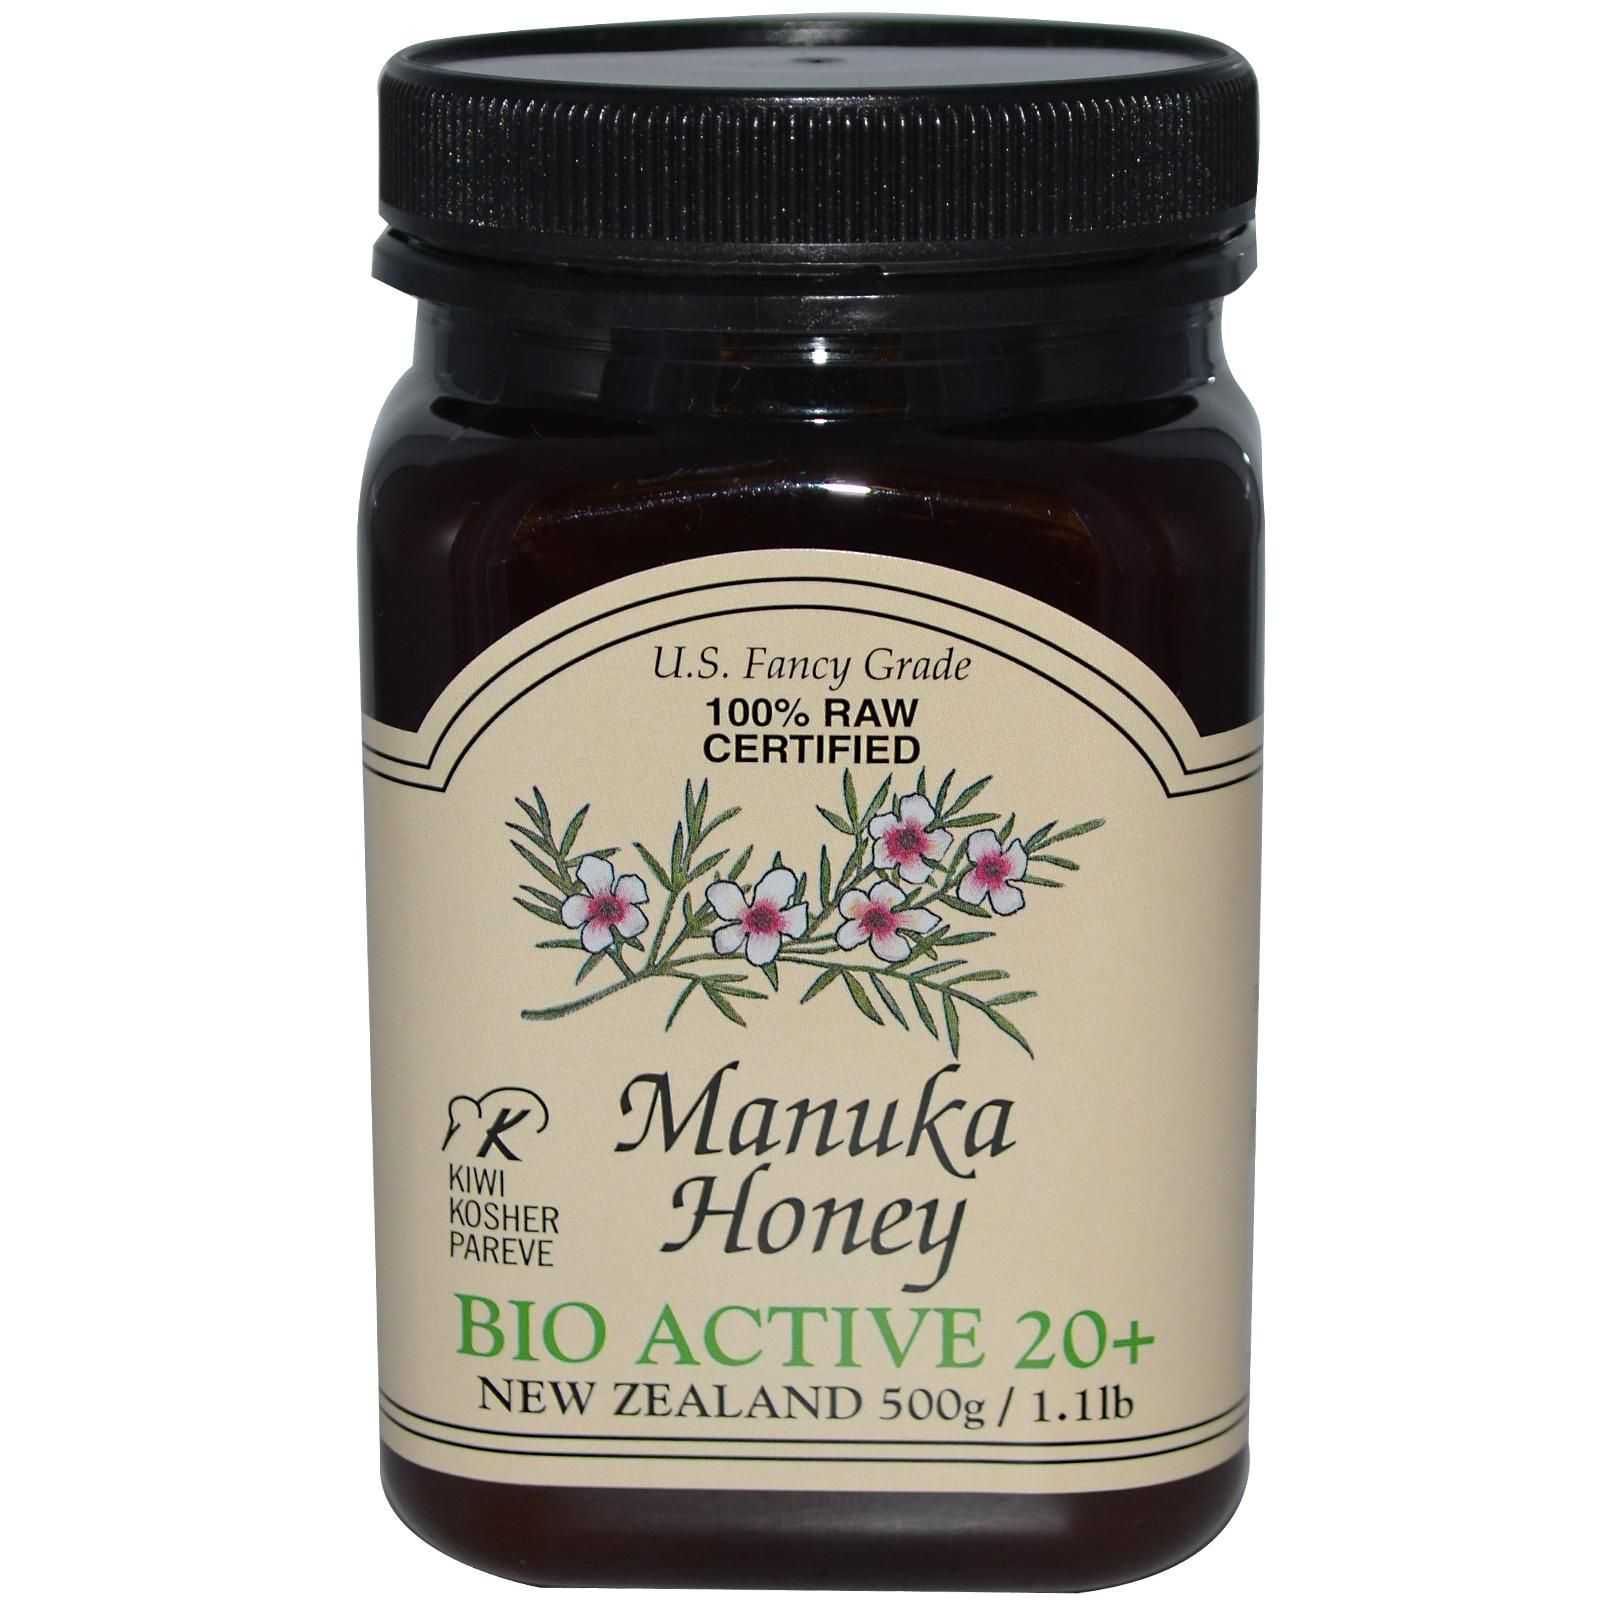 Мёд манука – суперпродукт для здоровья и красоты из новой зеландии